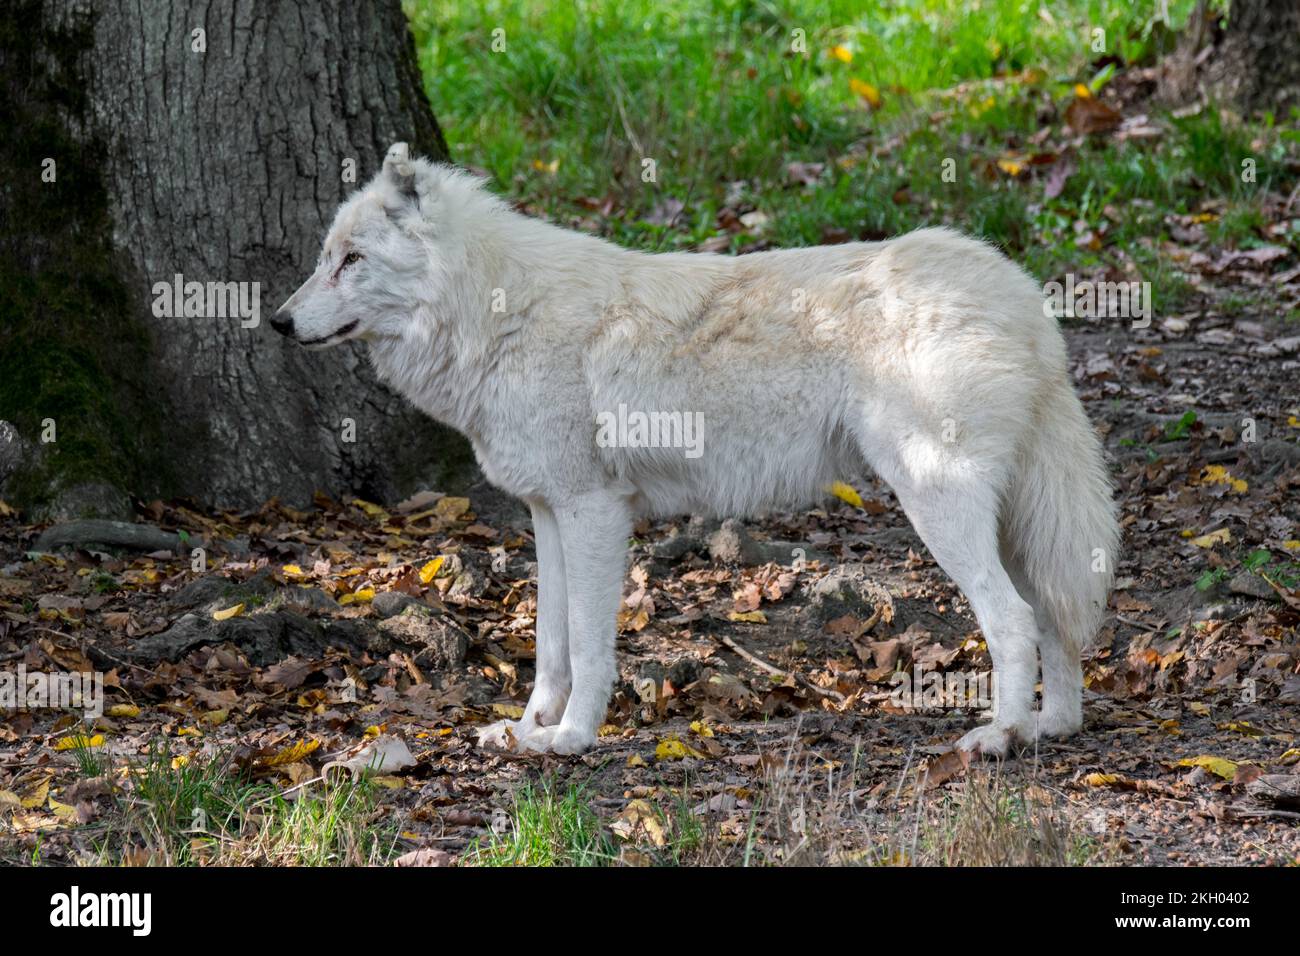 Lupo artico / lupo bianco / lupo polare (Canis lupus arctos) nello zoo, nativo della tundra dell'Alto Artico del Canada Foto Stock